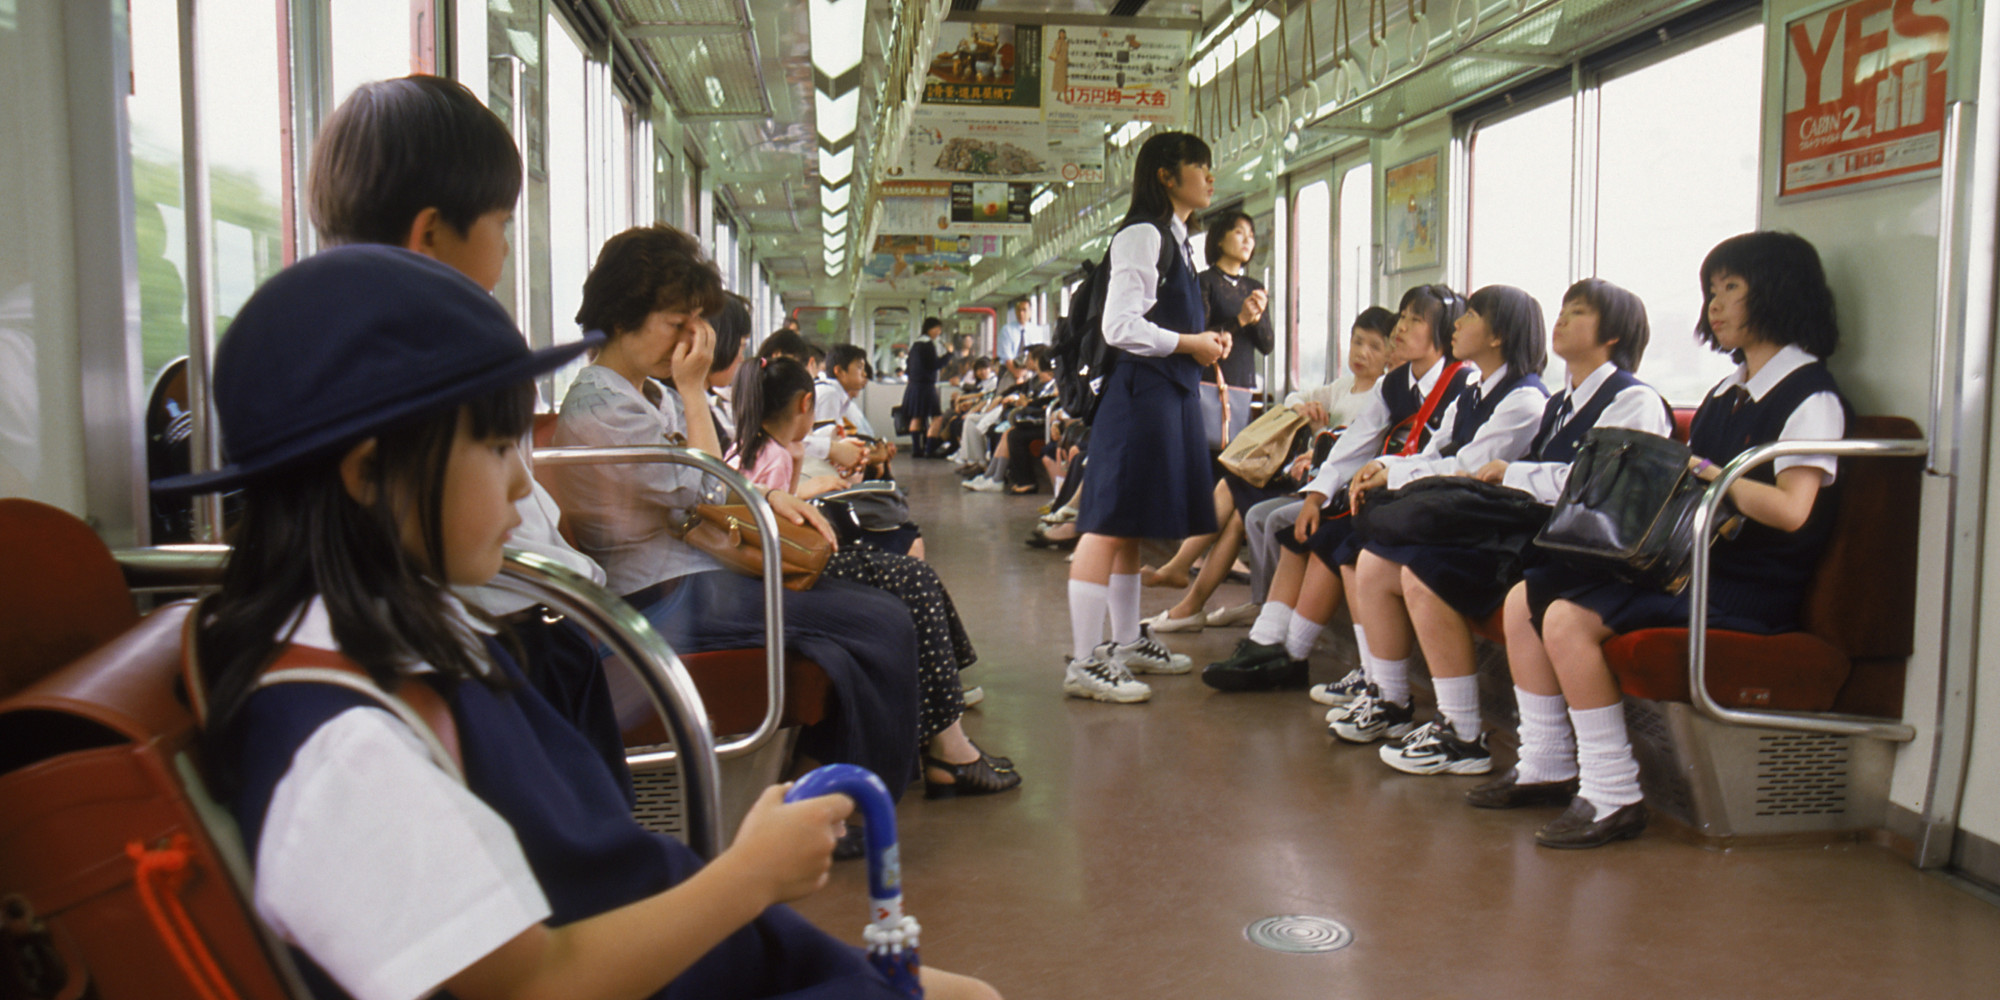 азиаток в транспорте онлайн фото 92